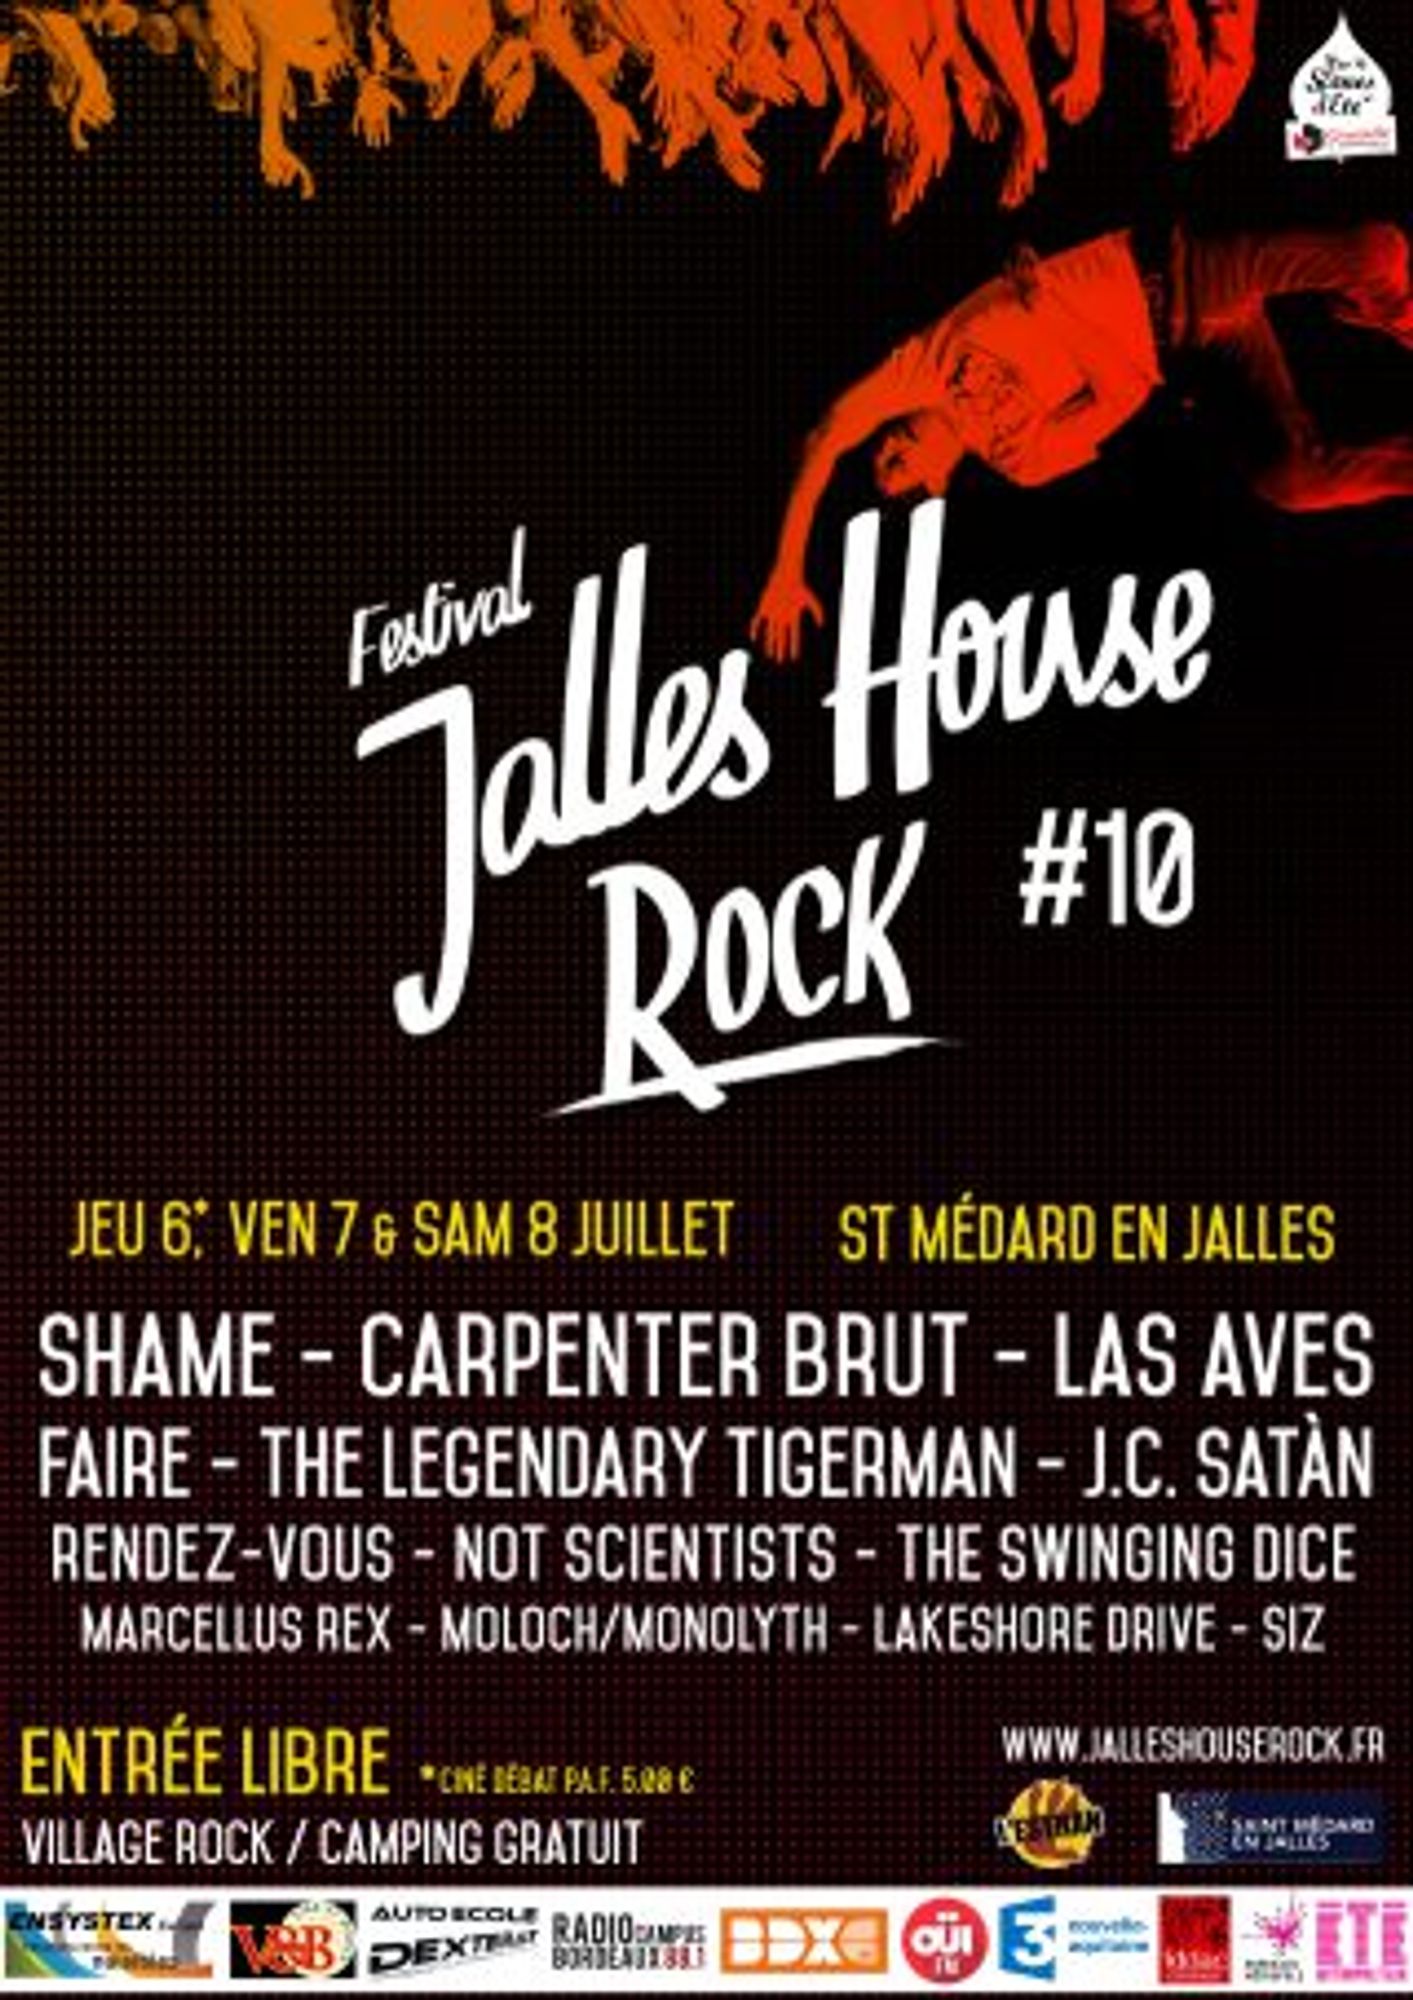 OÜI FM vous invite au festival Jalles House Rock